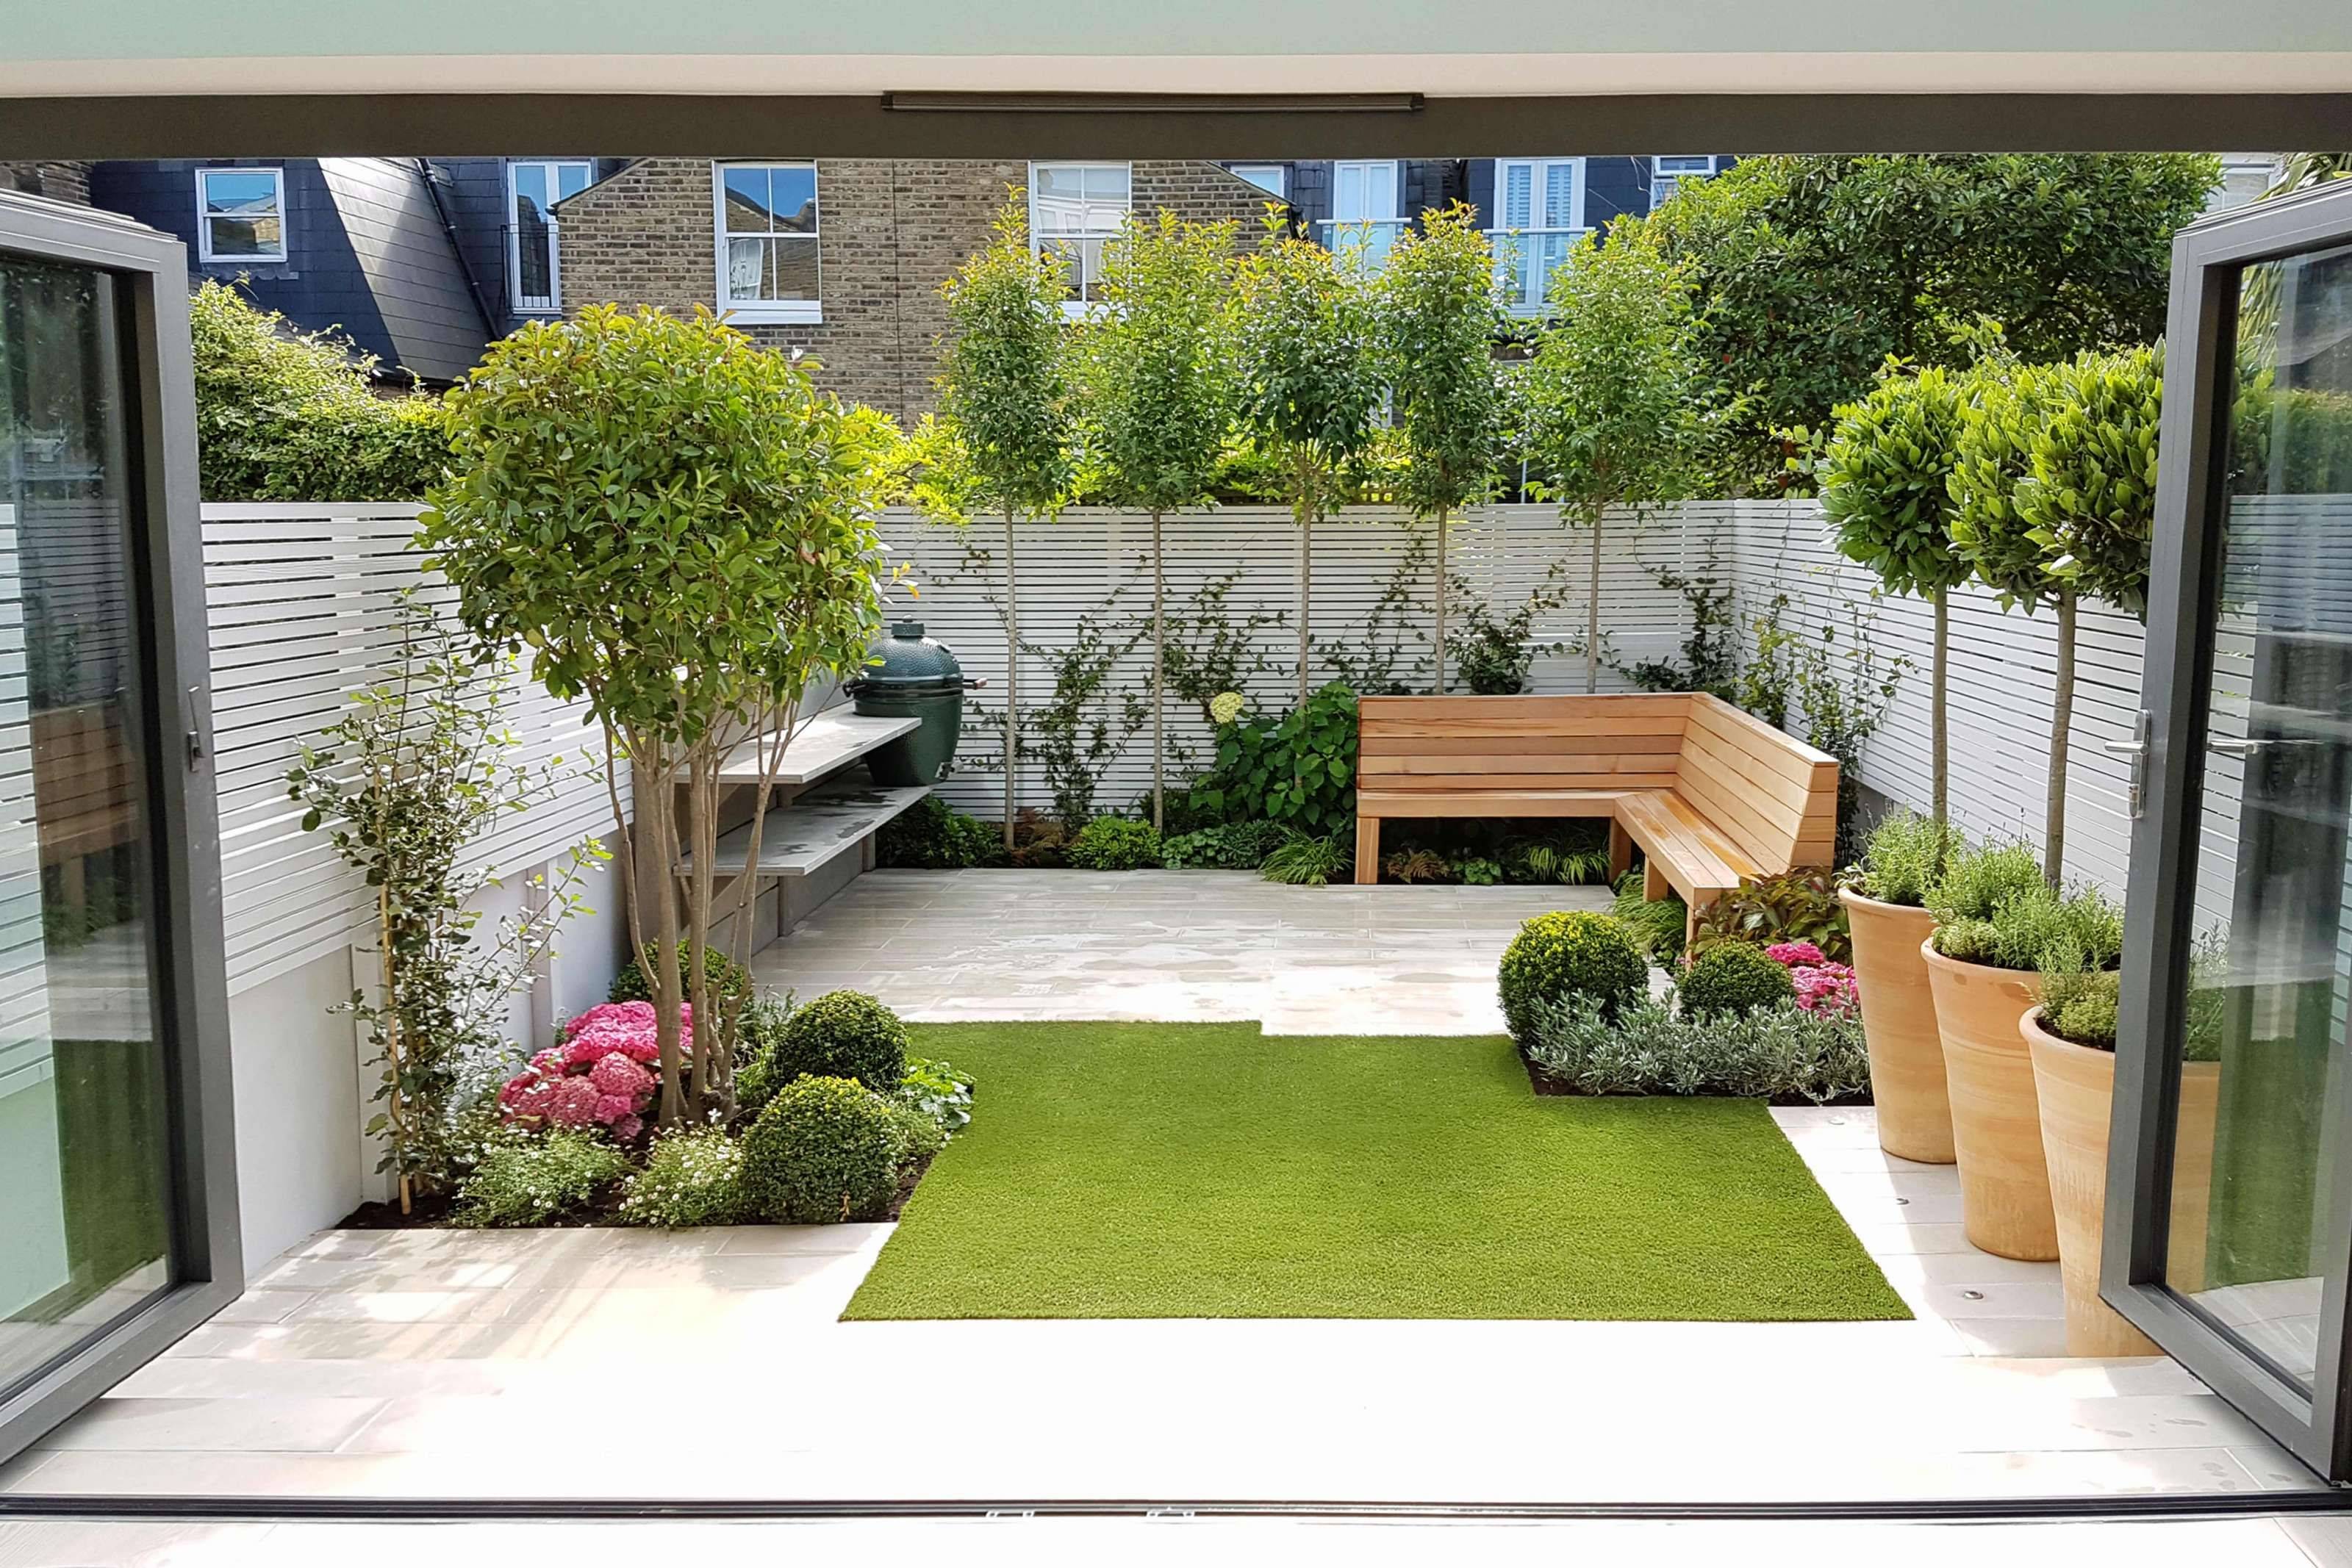 Top London Garden Designs Garden Club London